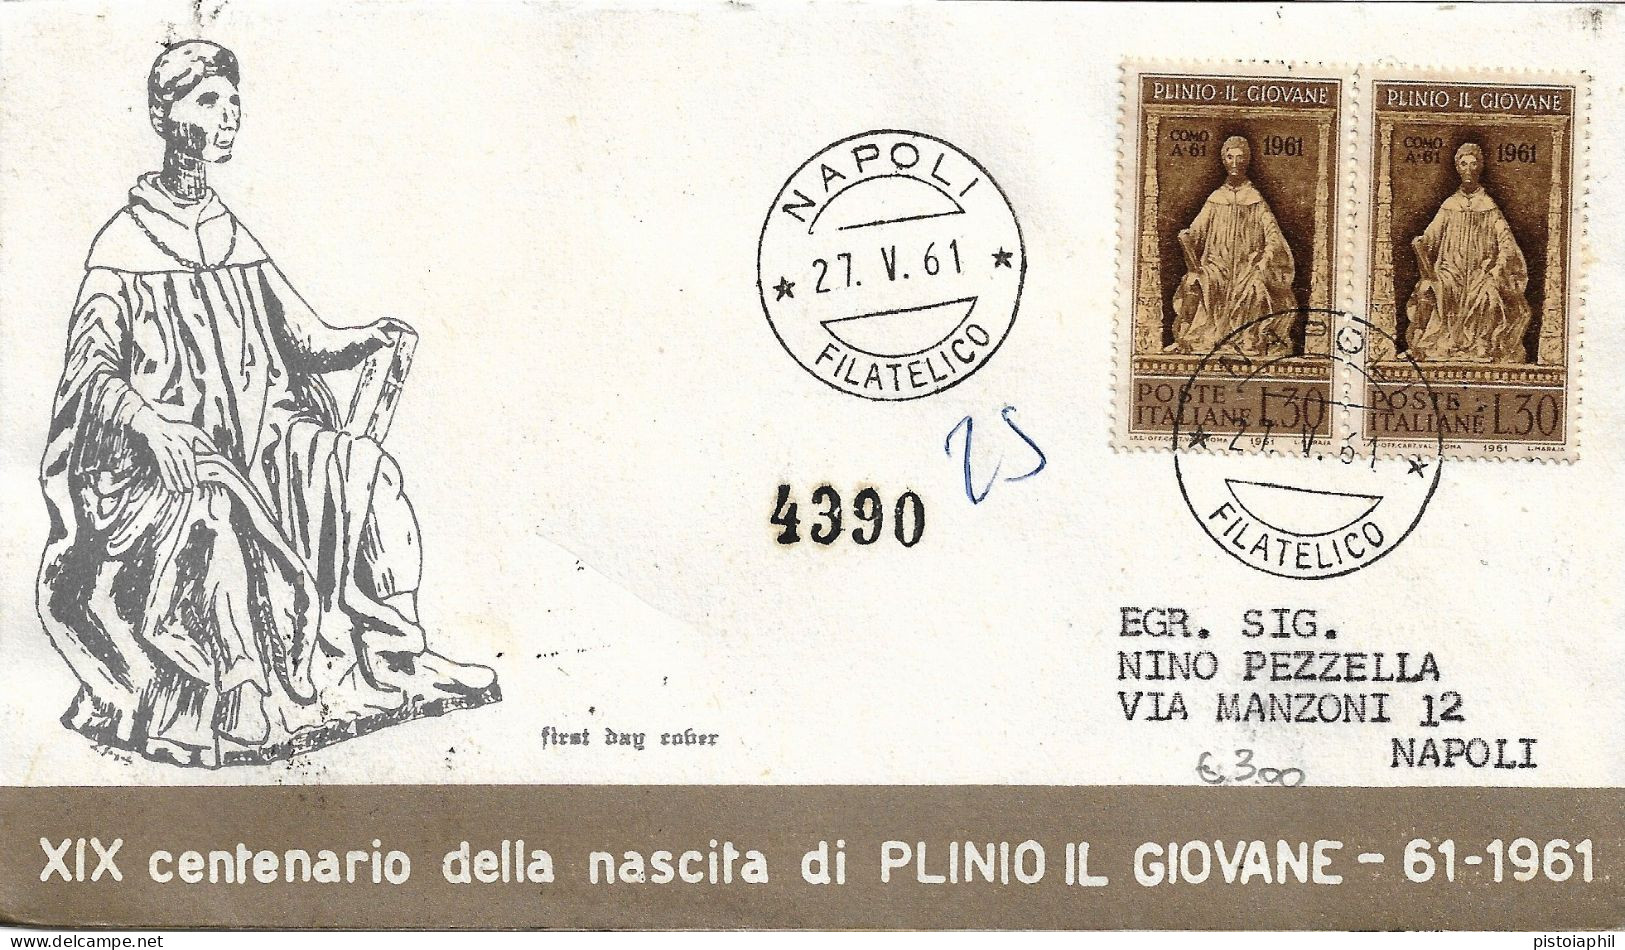 RARA Fdc Venus: PLINIO IL GIOVANE 1961 Raccomandata, Annullo Filatelico Napoli - FDC